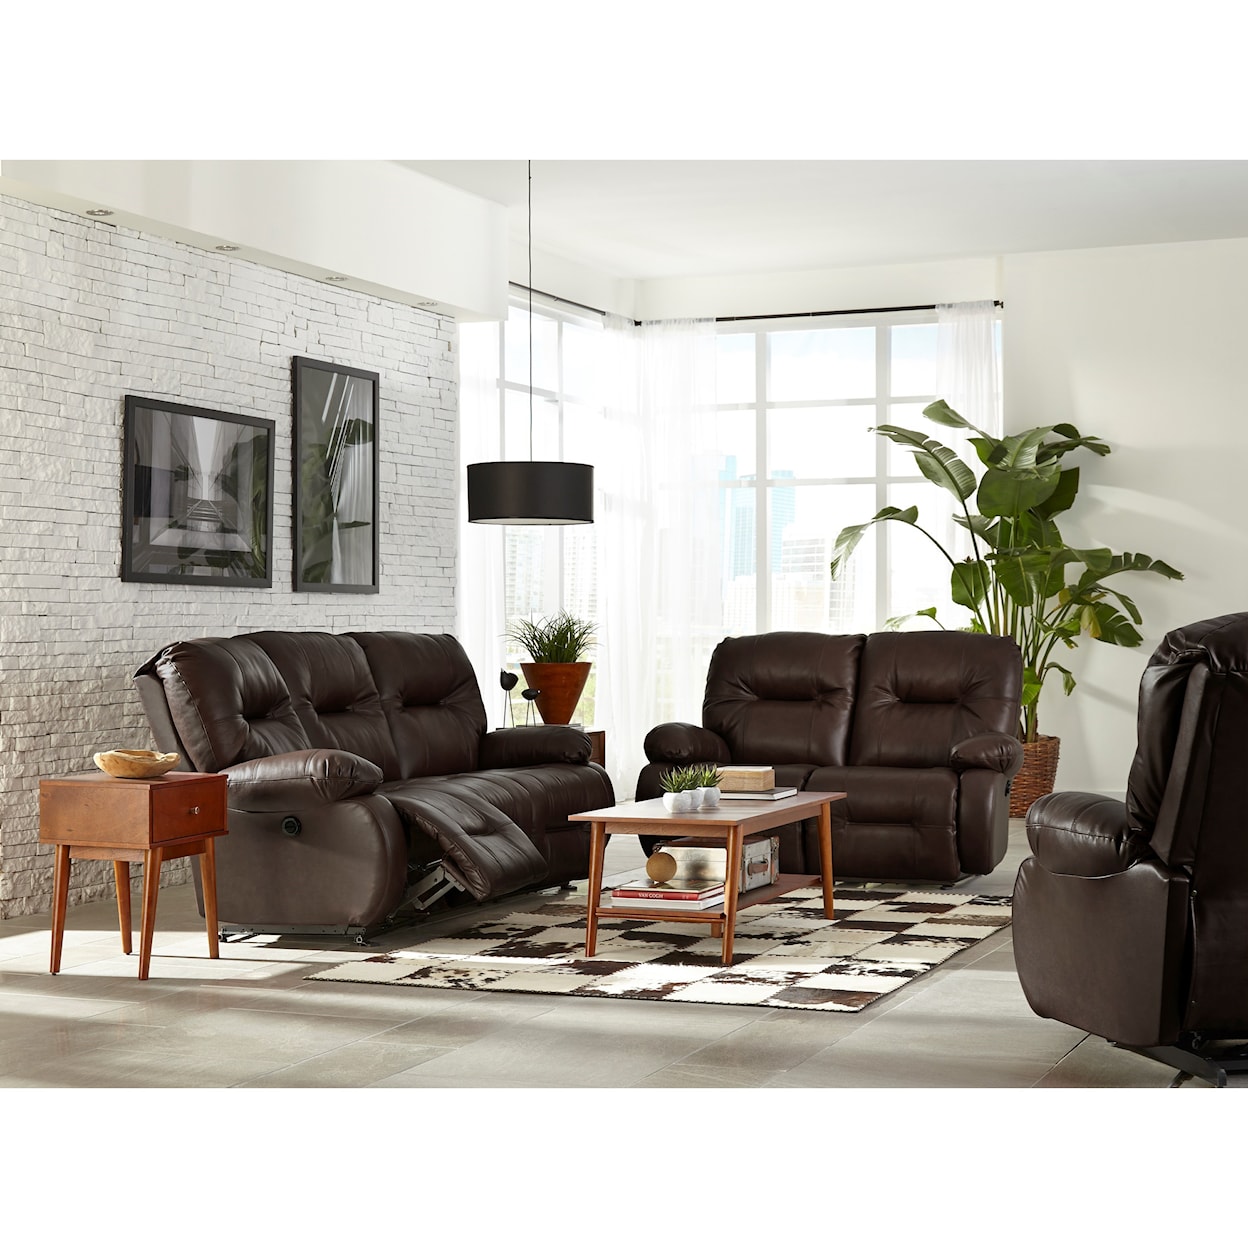 Best Home Furnishings Brinley 2 Power Reclining Sofa w/ Pwr Headrest